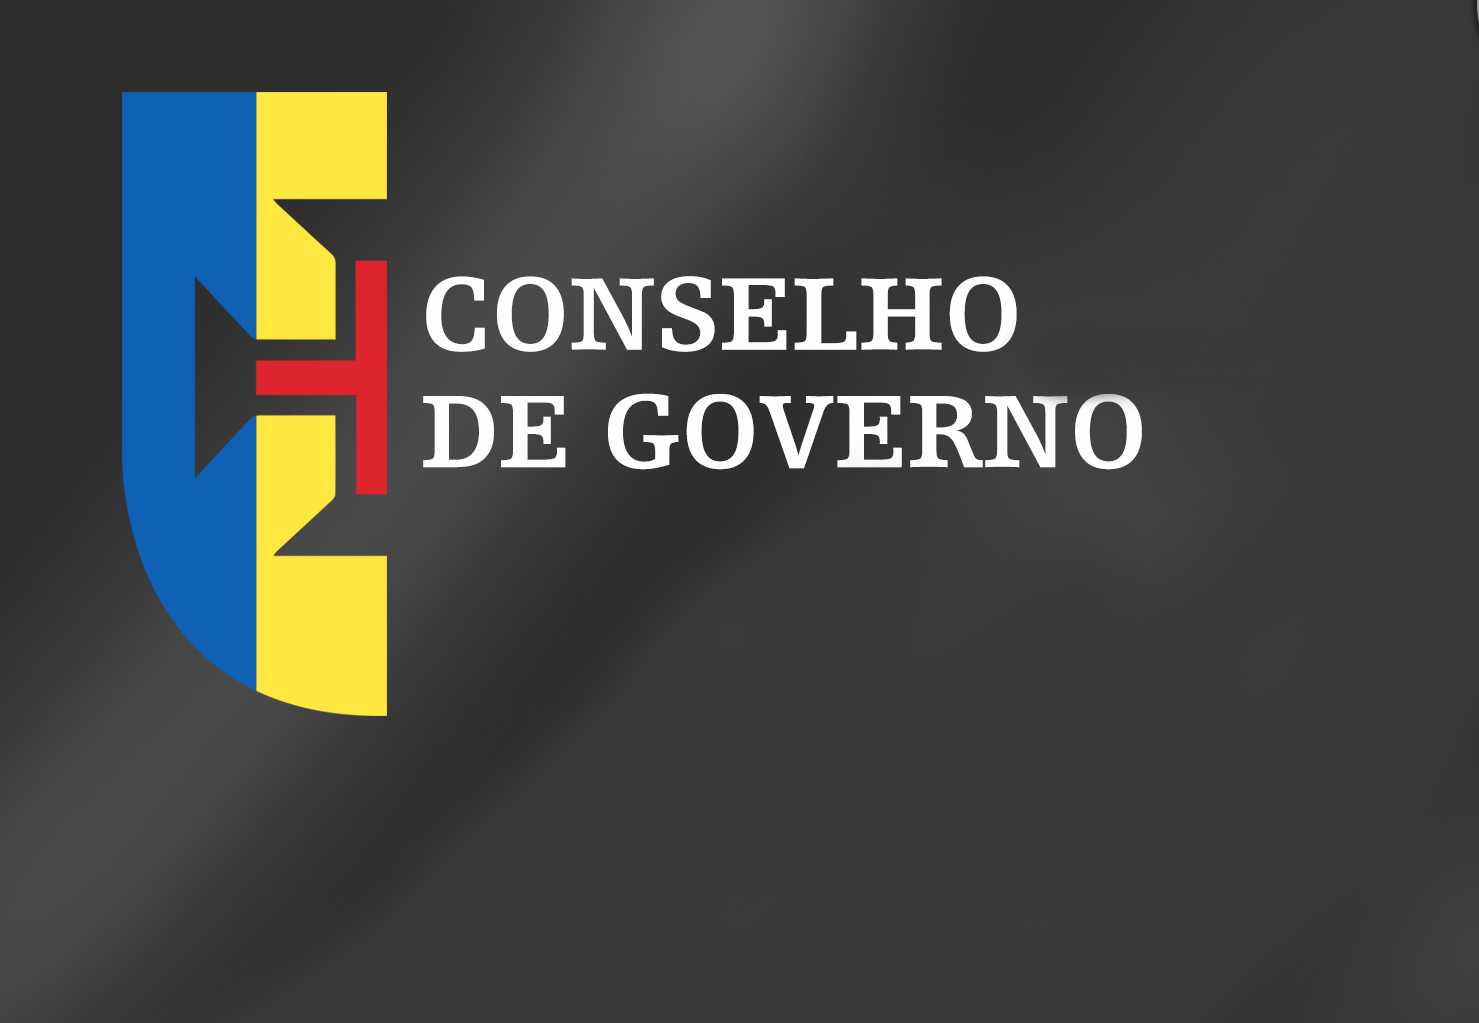 Conclusões Conselho de Governo - 30 de junho de 2021